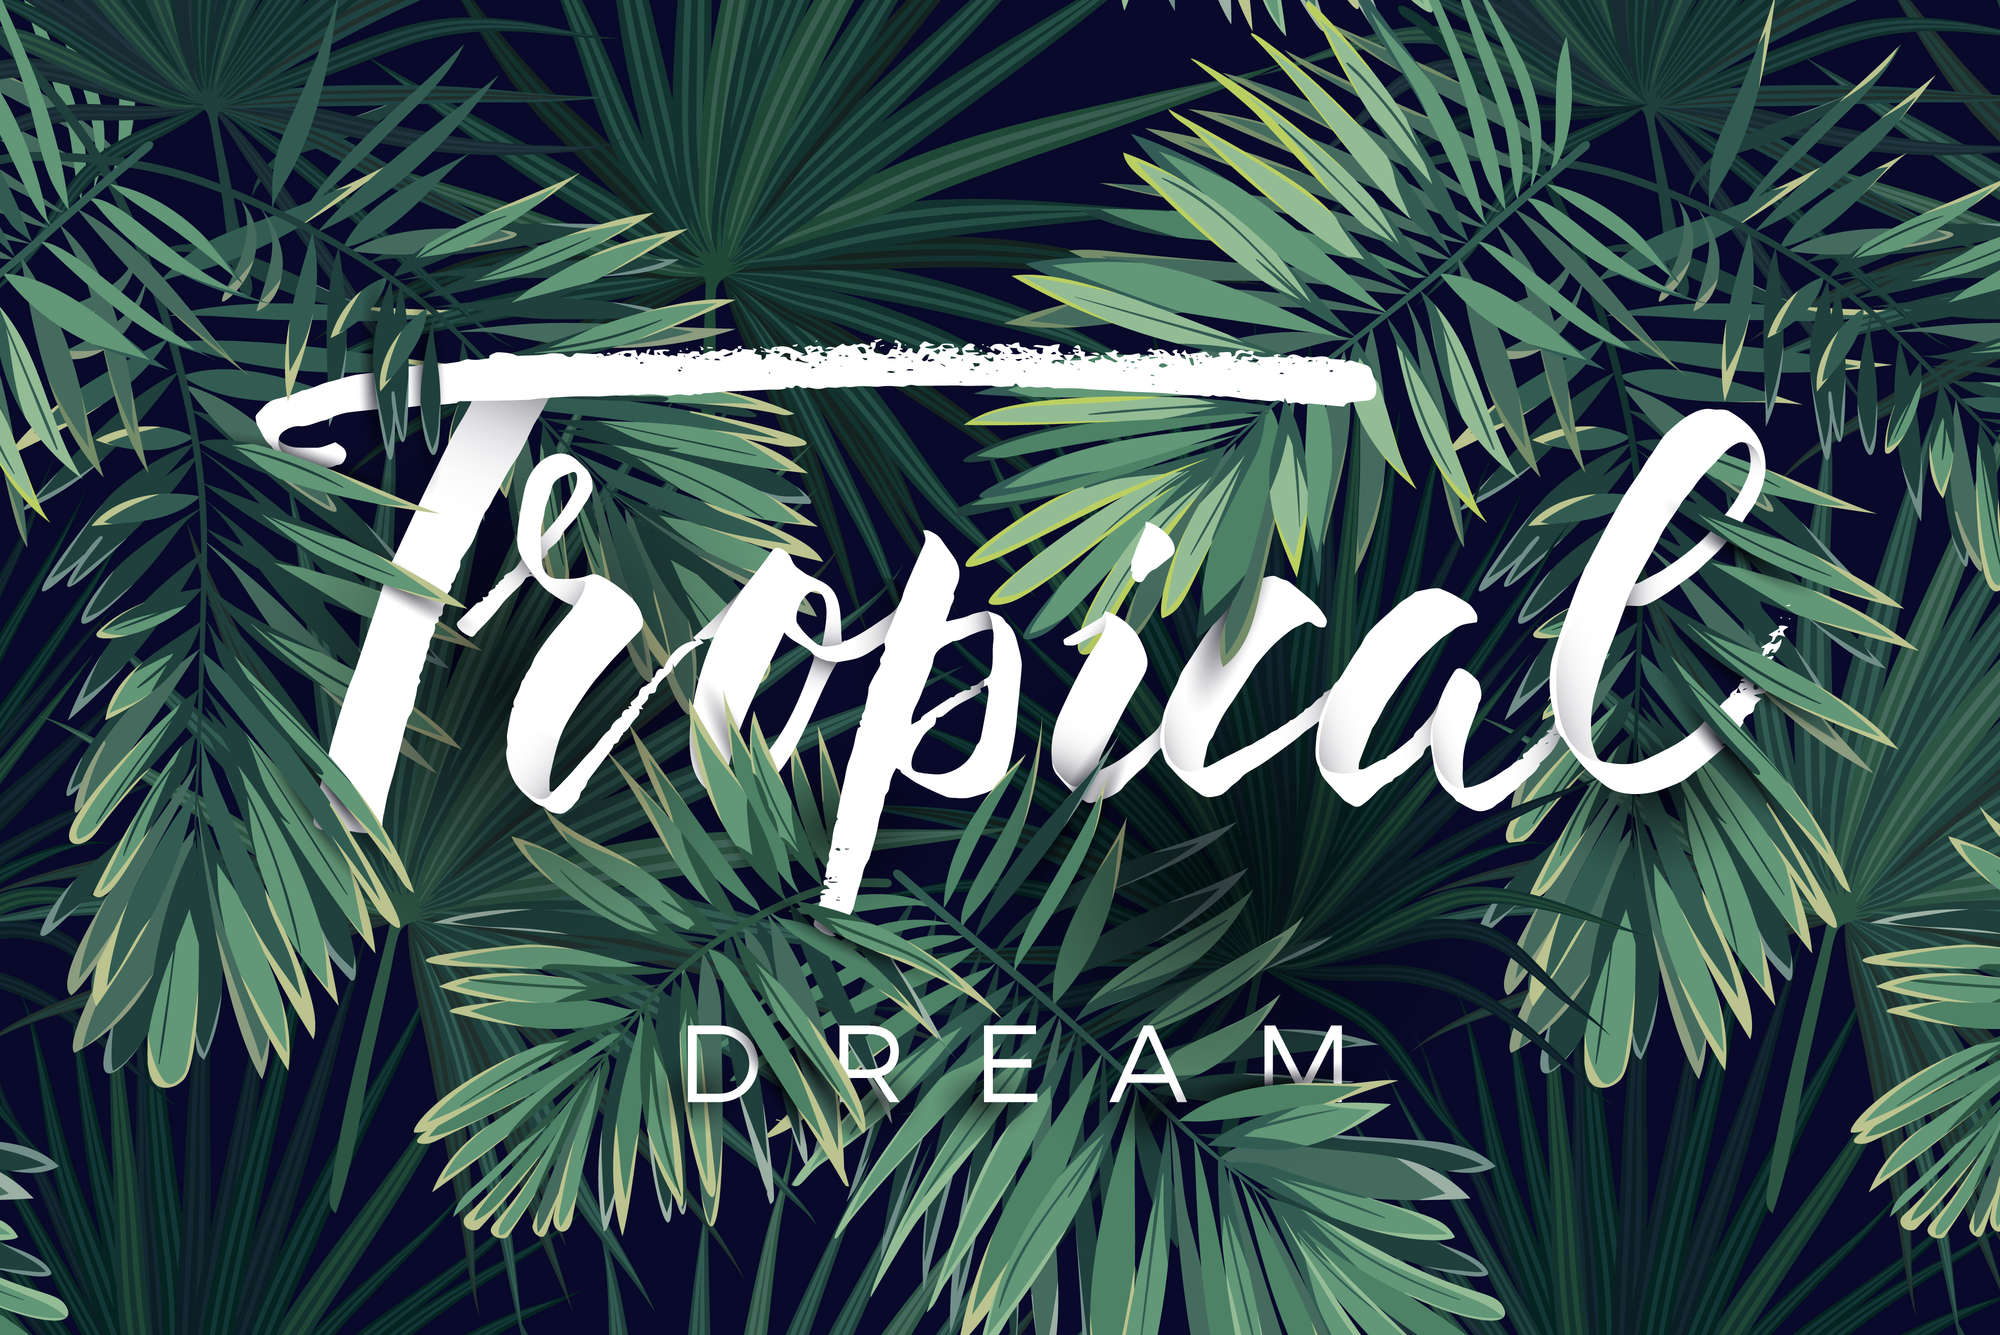             Grafik Fototapete "Tropical Dream" Schriftzug auf Perlmutt Glattvlies
        